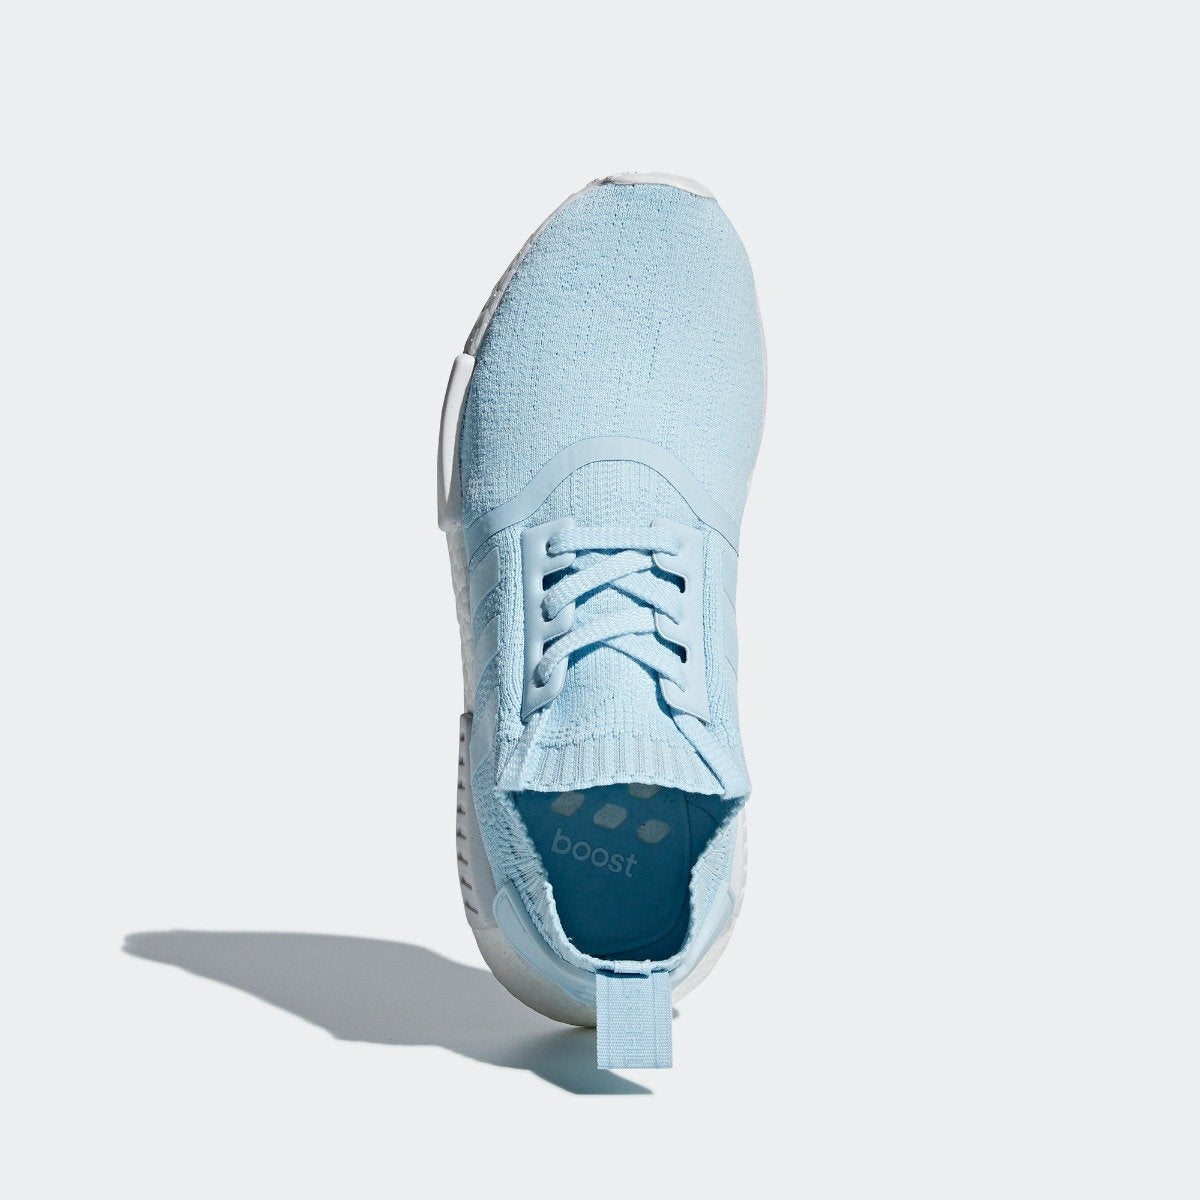 icy blue adidas